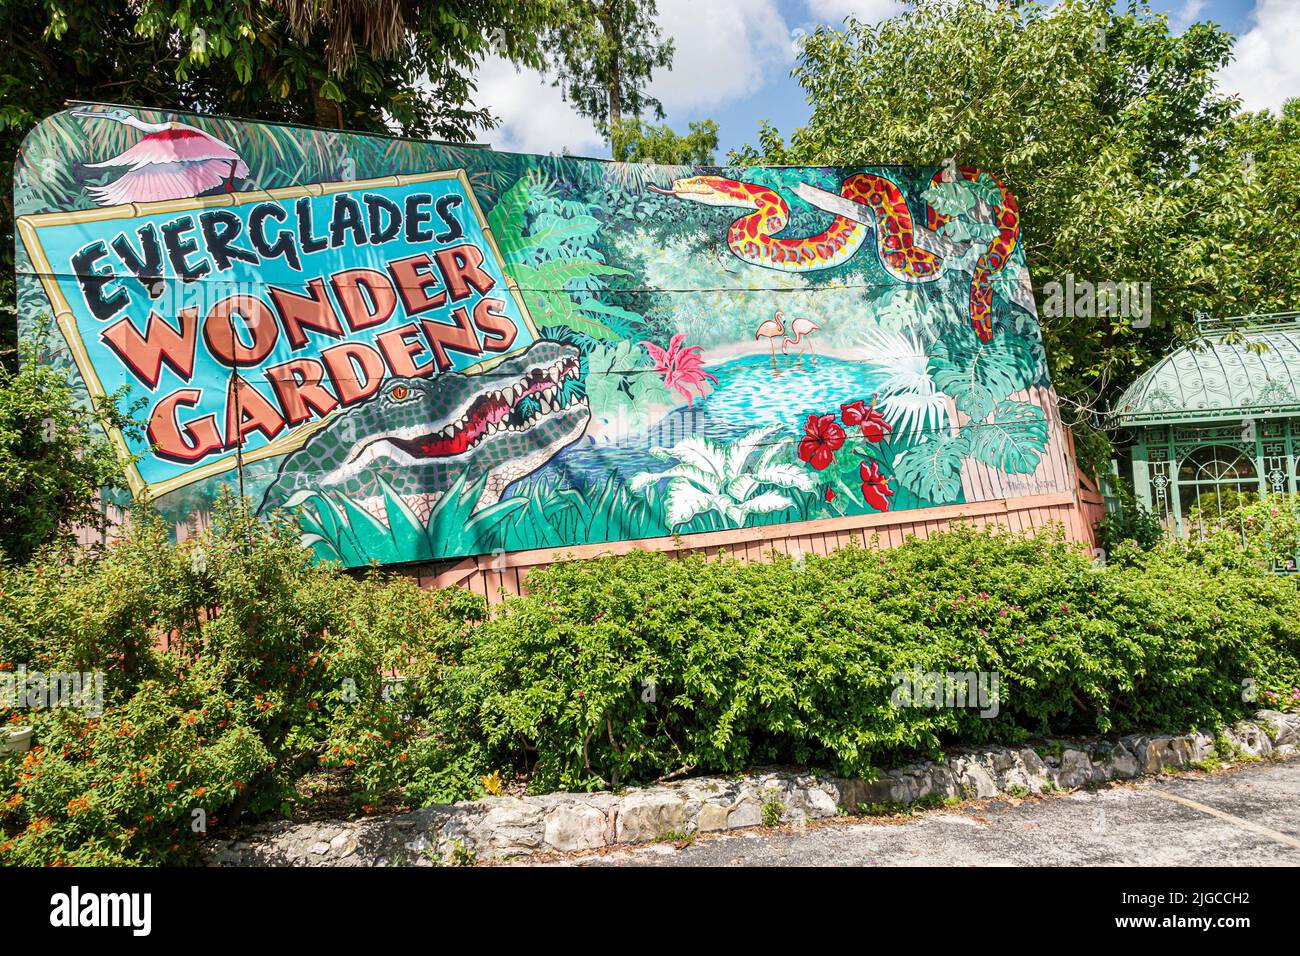 Bonita Springs Florida, Everglades Wonder Gardens, refugio de jardín botánico, fauna y flora lesionada exhibe señal de entrada a la atracción turística Foto de stock